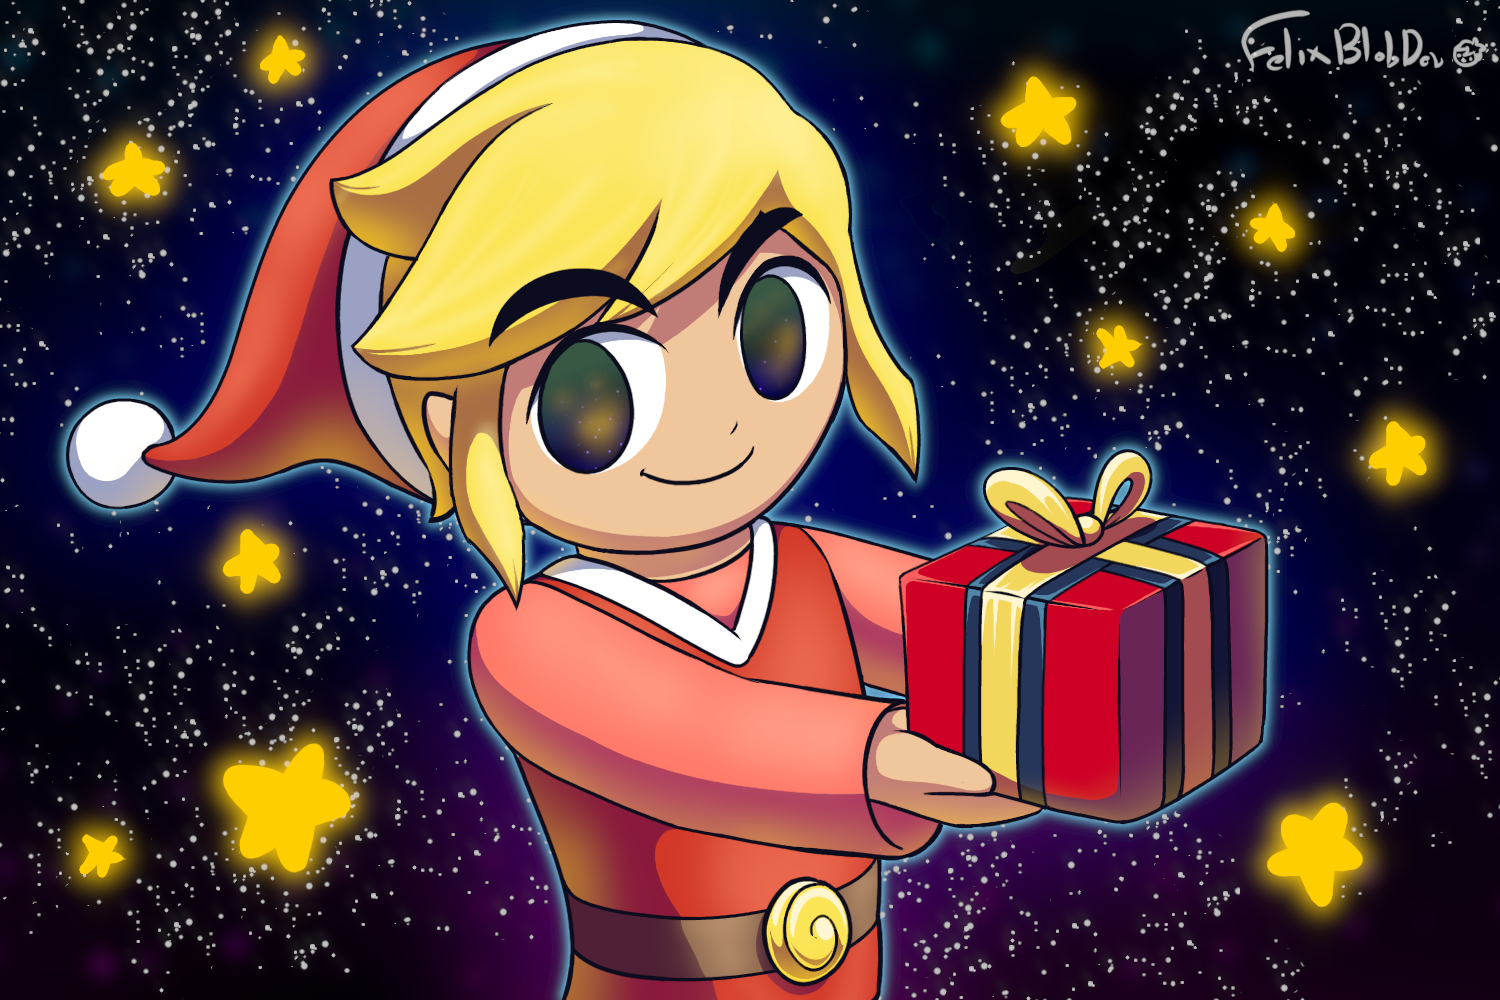 Zelda's Letter Christmas Card by Manveri-10 on DeviantArt